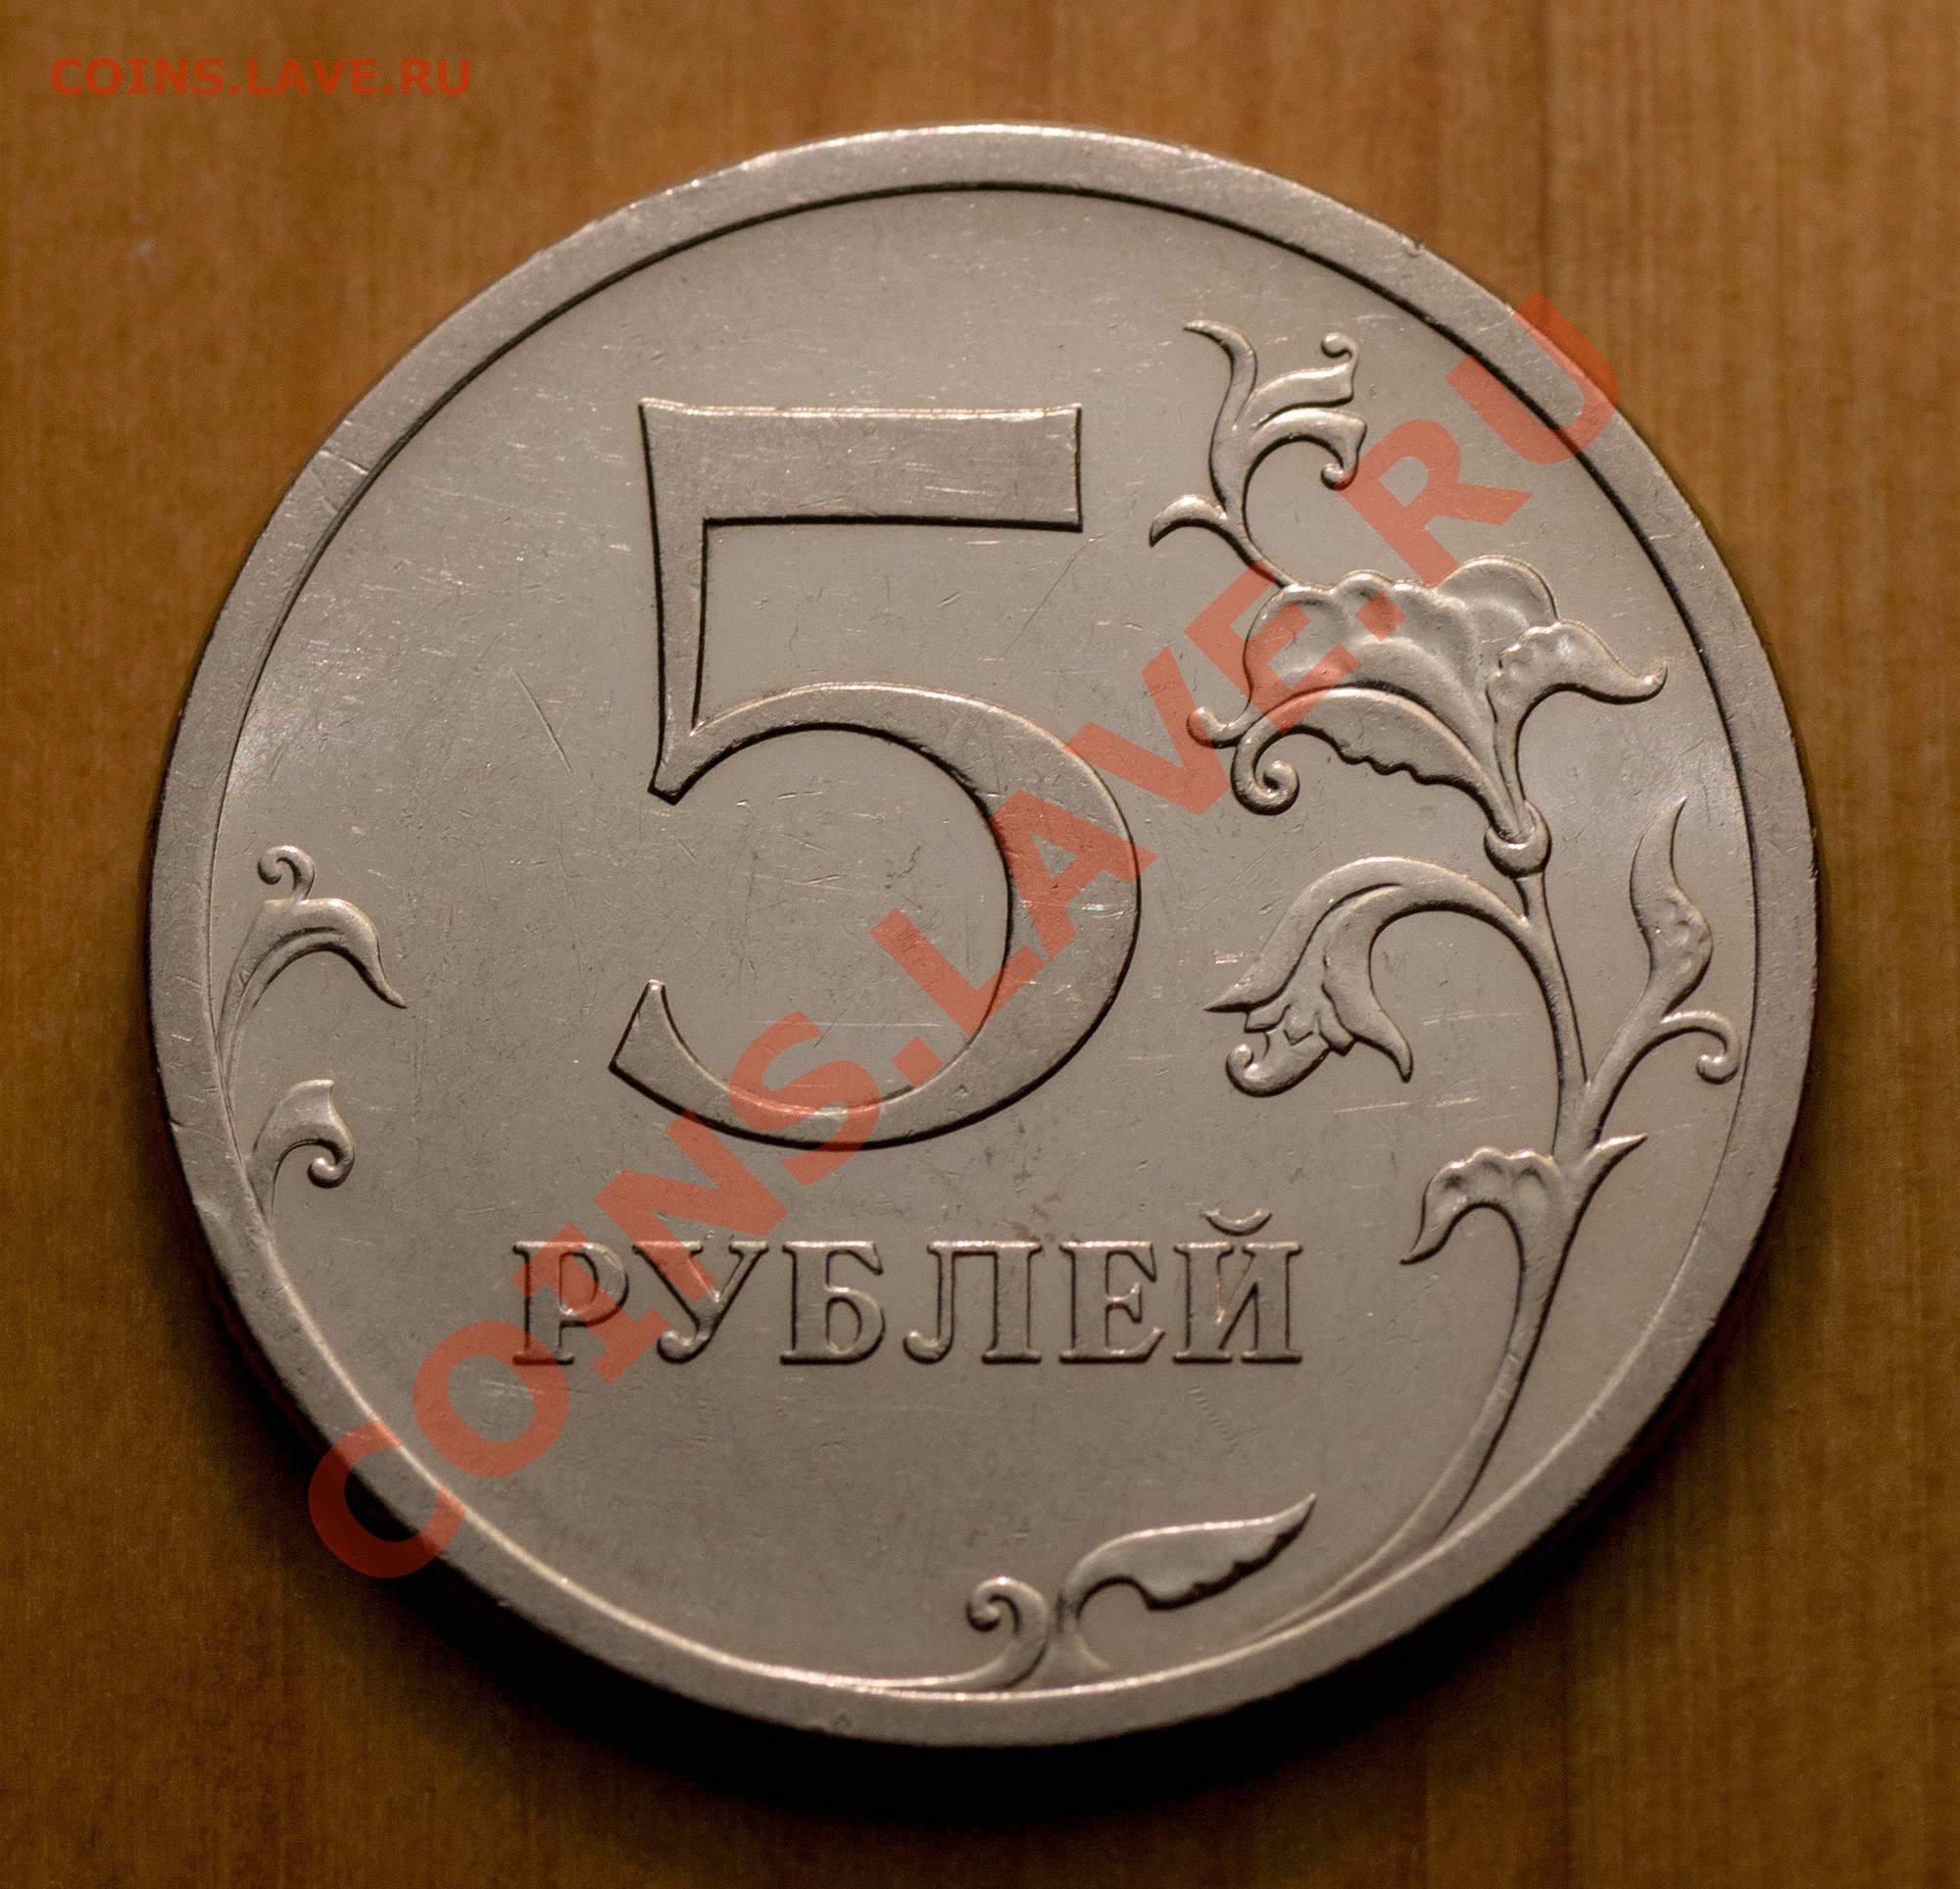 9 5 рубли. Пять рублей 2009 г.штемпель 5.24. 5 Р класс. Монеты магнит. 5р класс картинки.